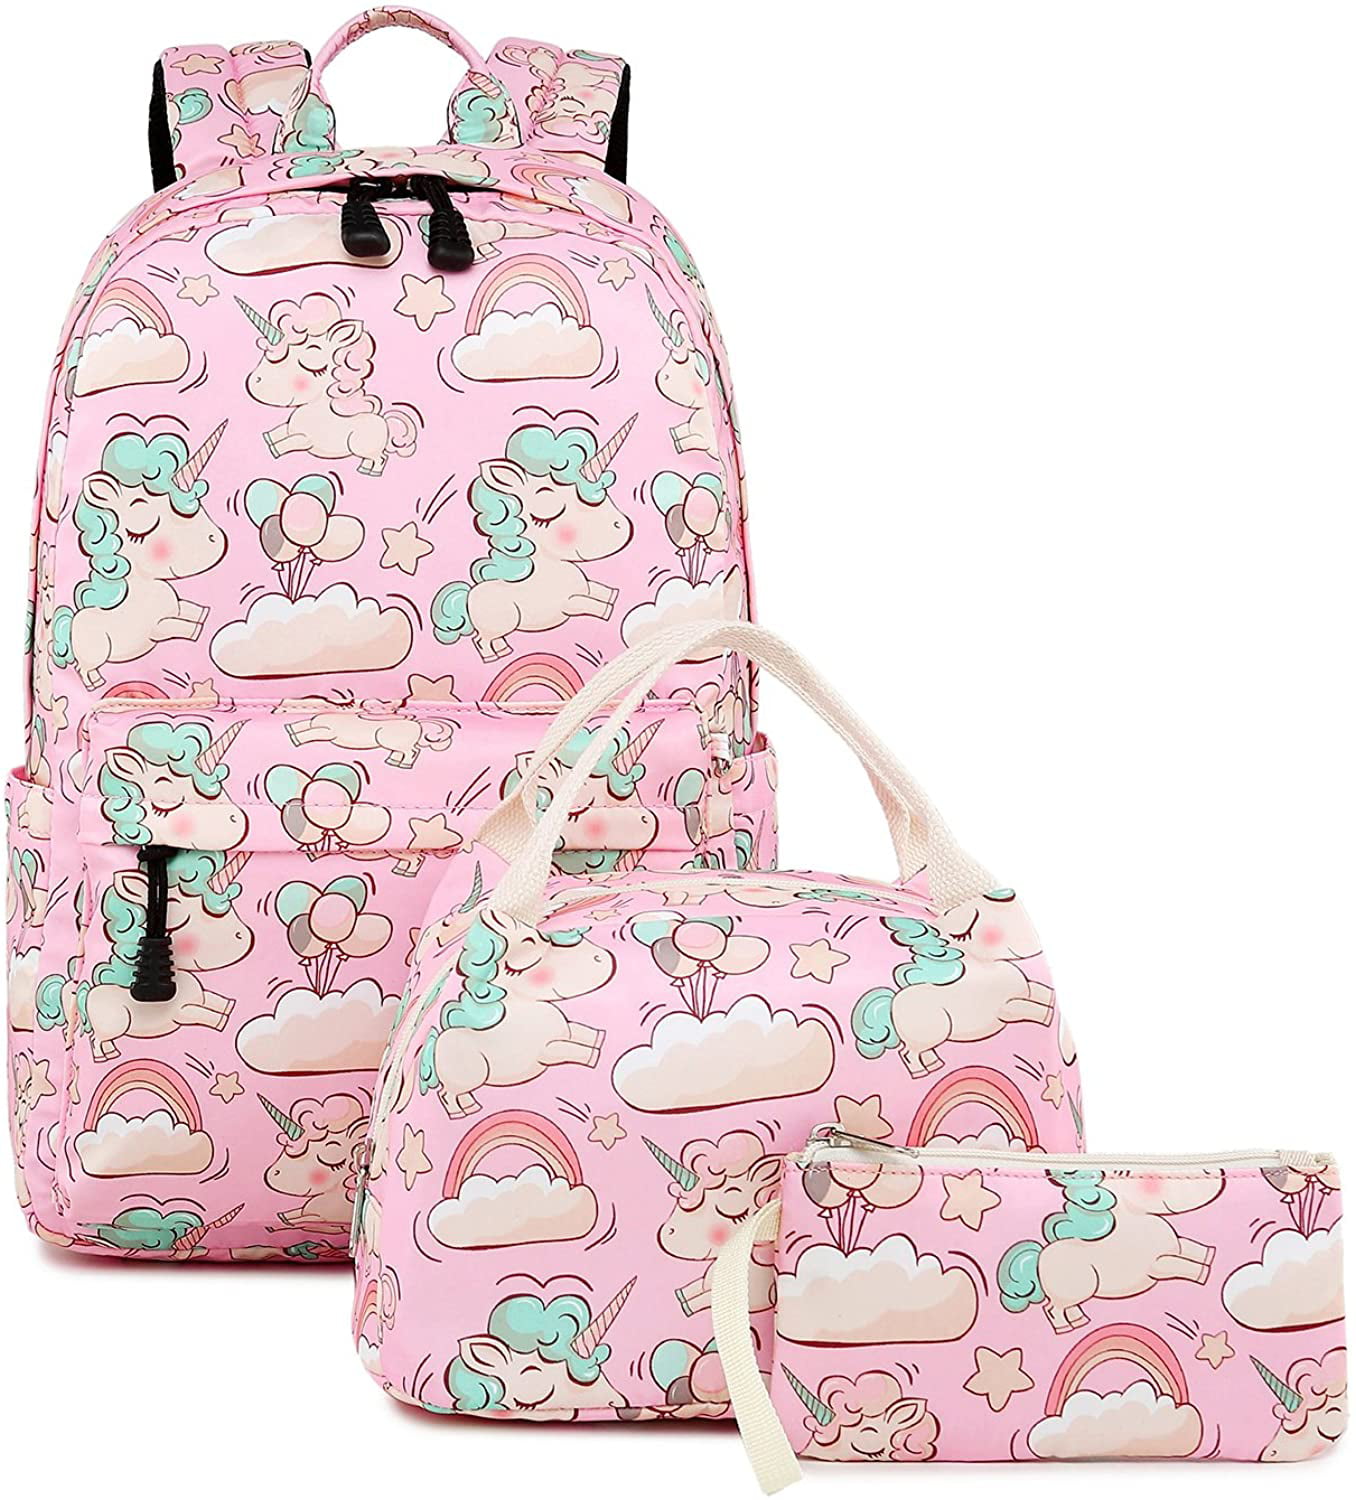 Unicorn Shark Dog Backpack Girls Boys School Bag Women Travel Laptop Rucksack